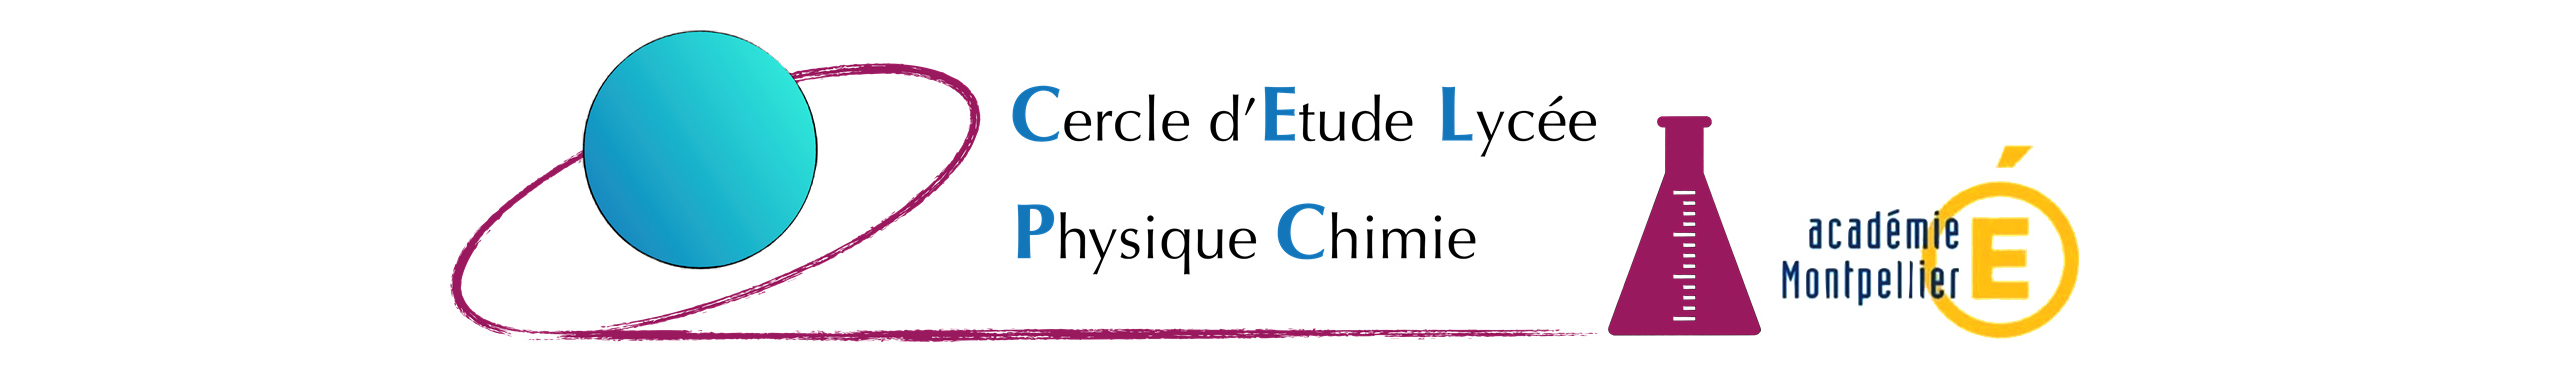 LOGO CELPC : Cercle d’étude lycée Physique-Chimie